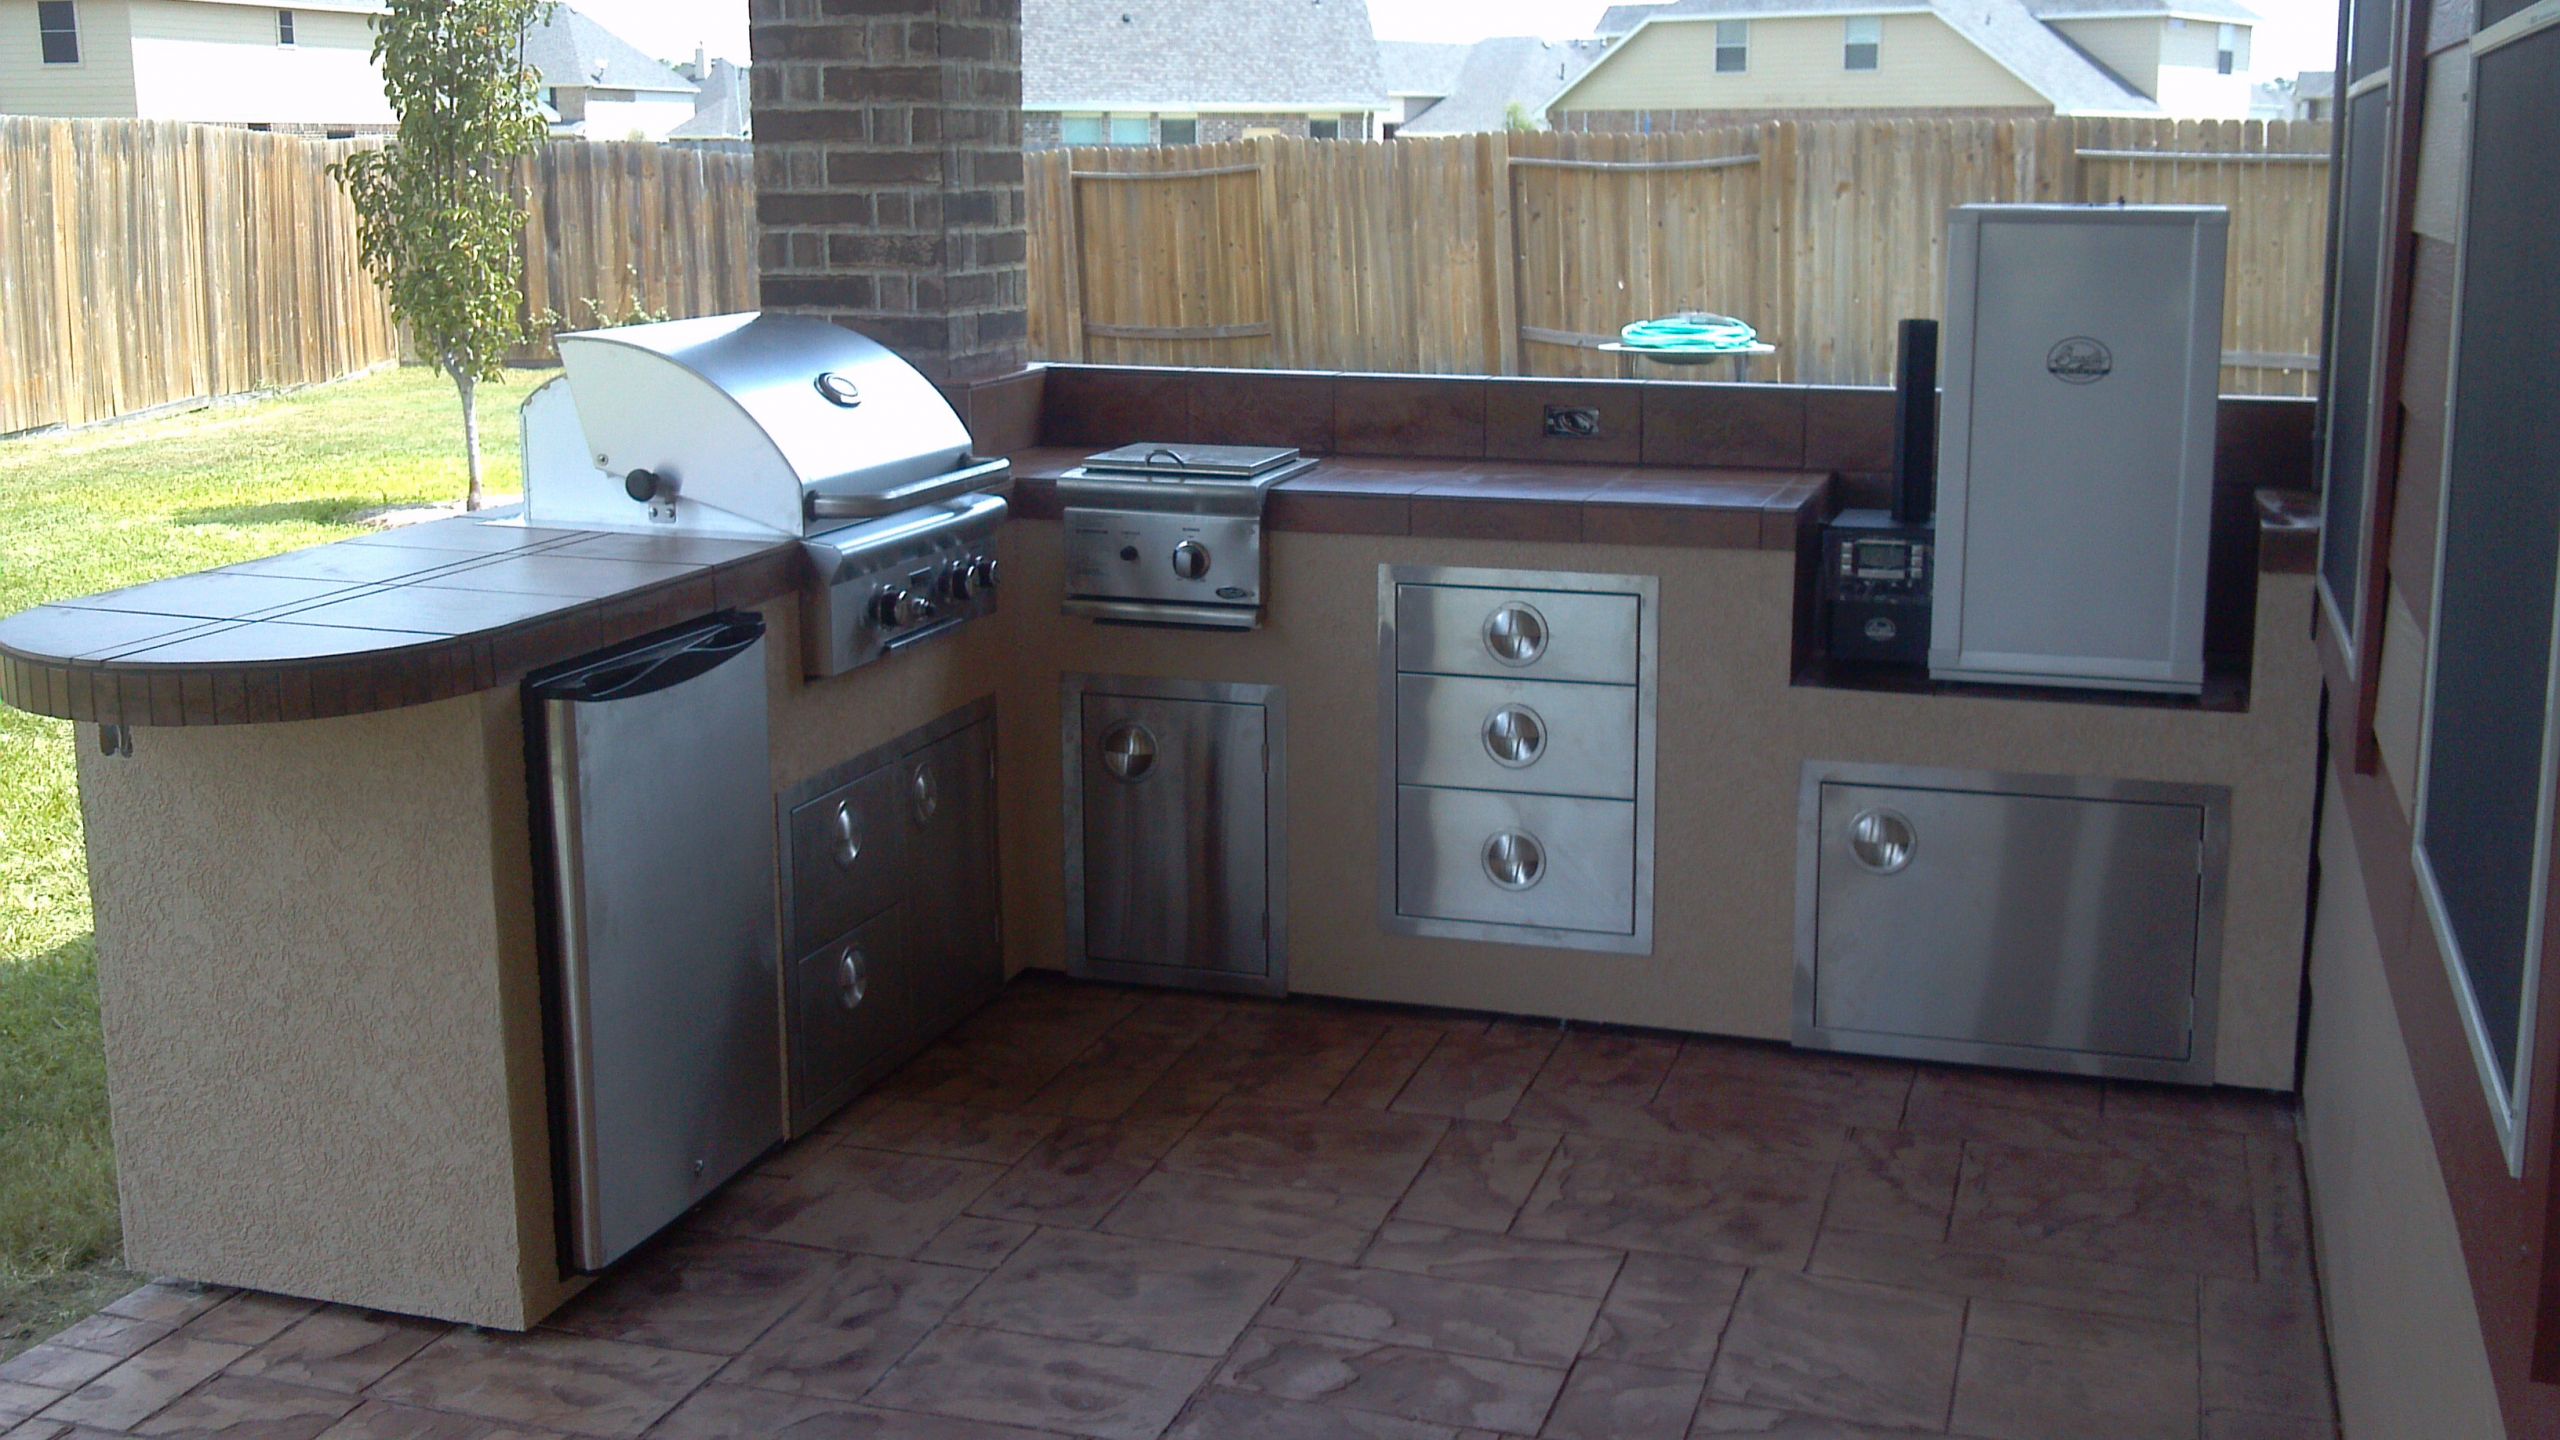 Built In Smoker Outdoor Kitchen
 Outdoor Kitchen Equipment Houston Outdoor Kitchen Gas